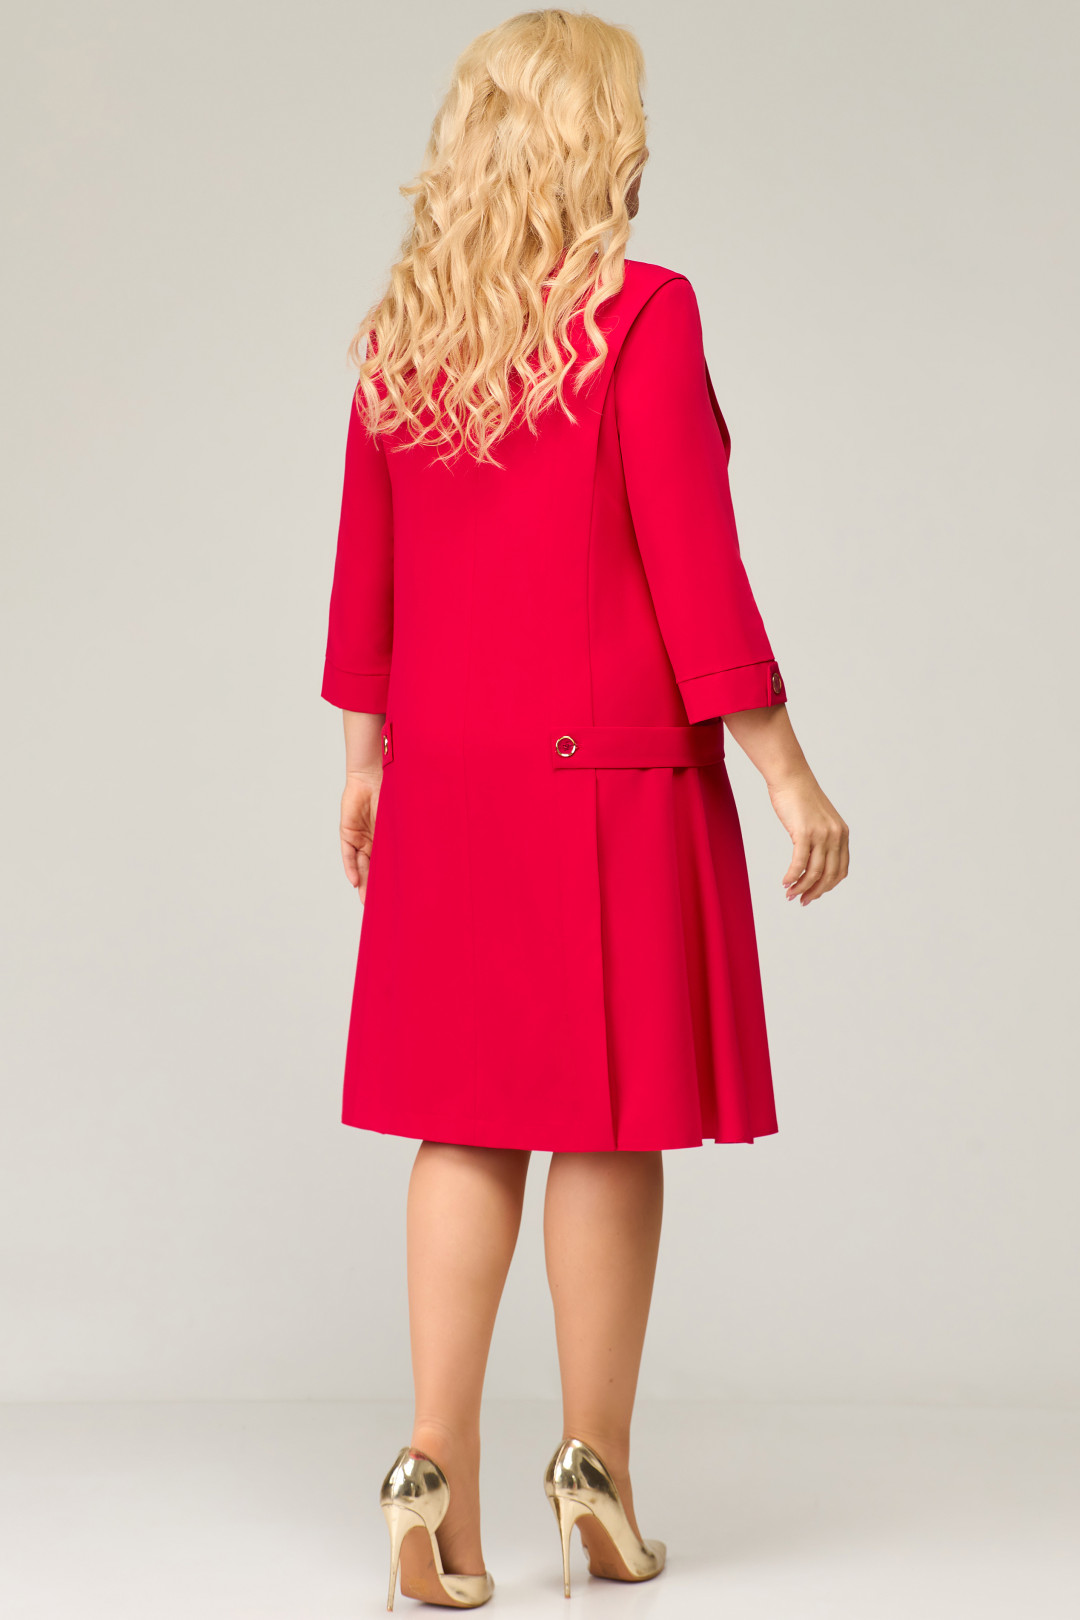 Платье Светлана-Стиль 1675 красный